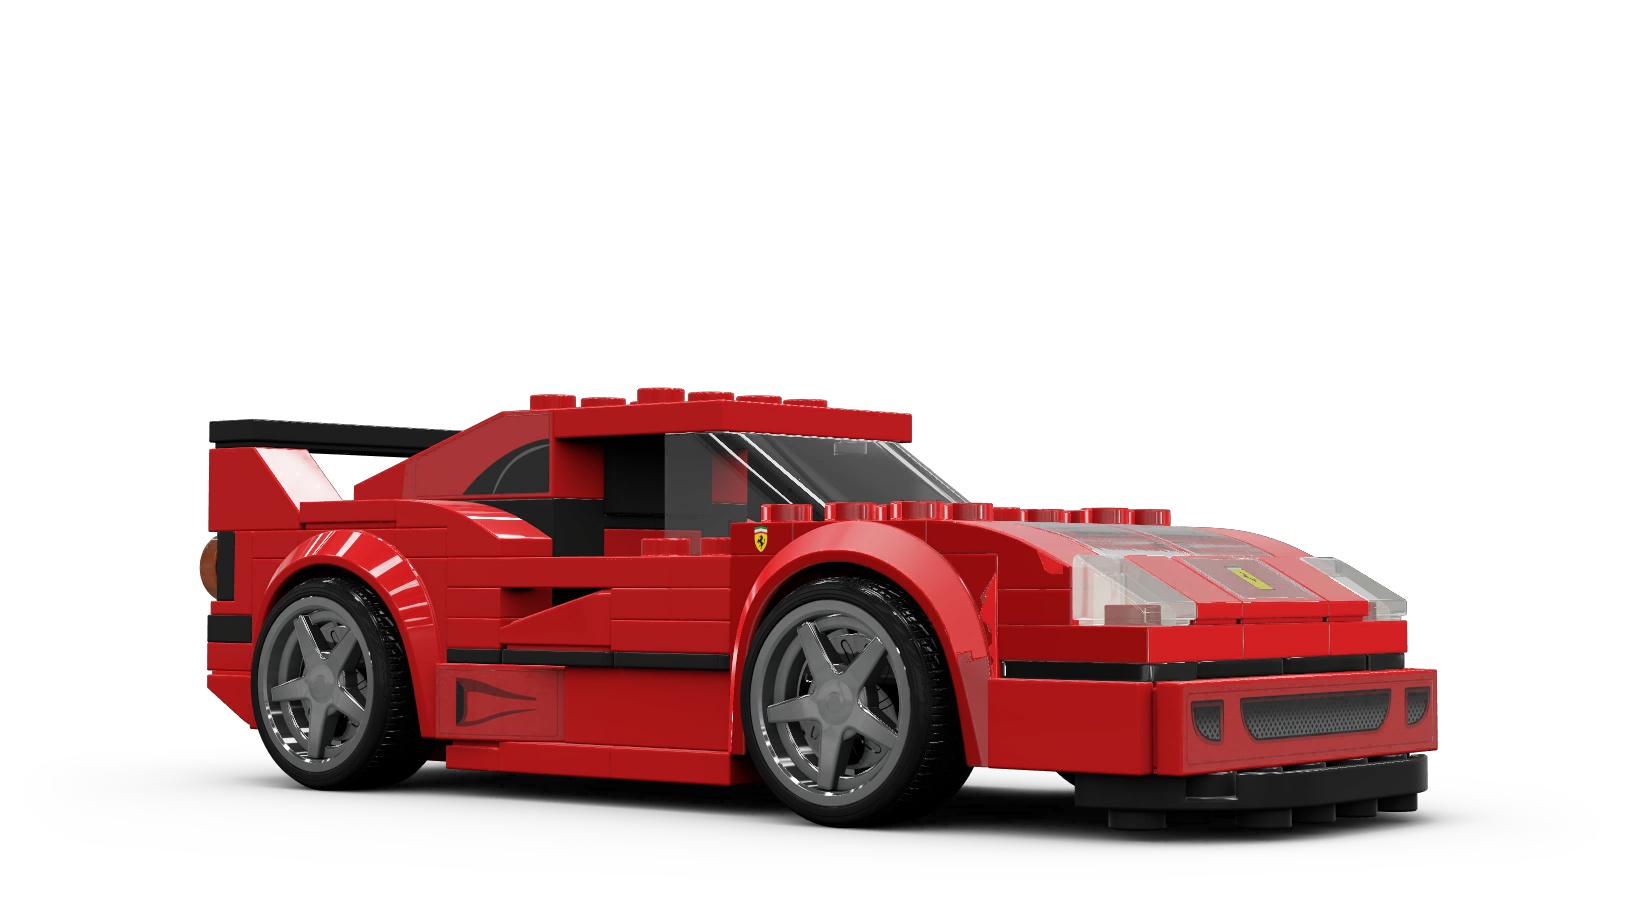 Ferrari F40 : Combien coûte ce modèle de supercar ?